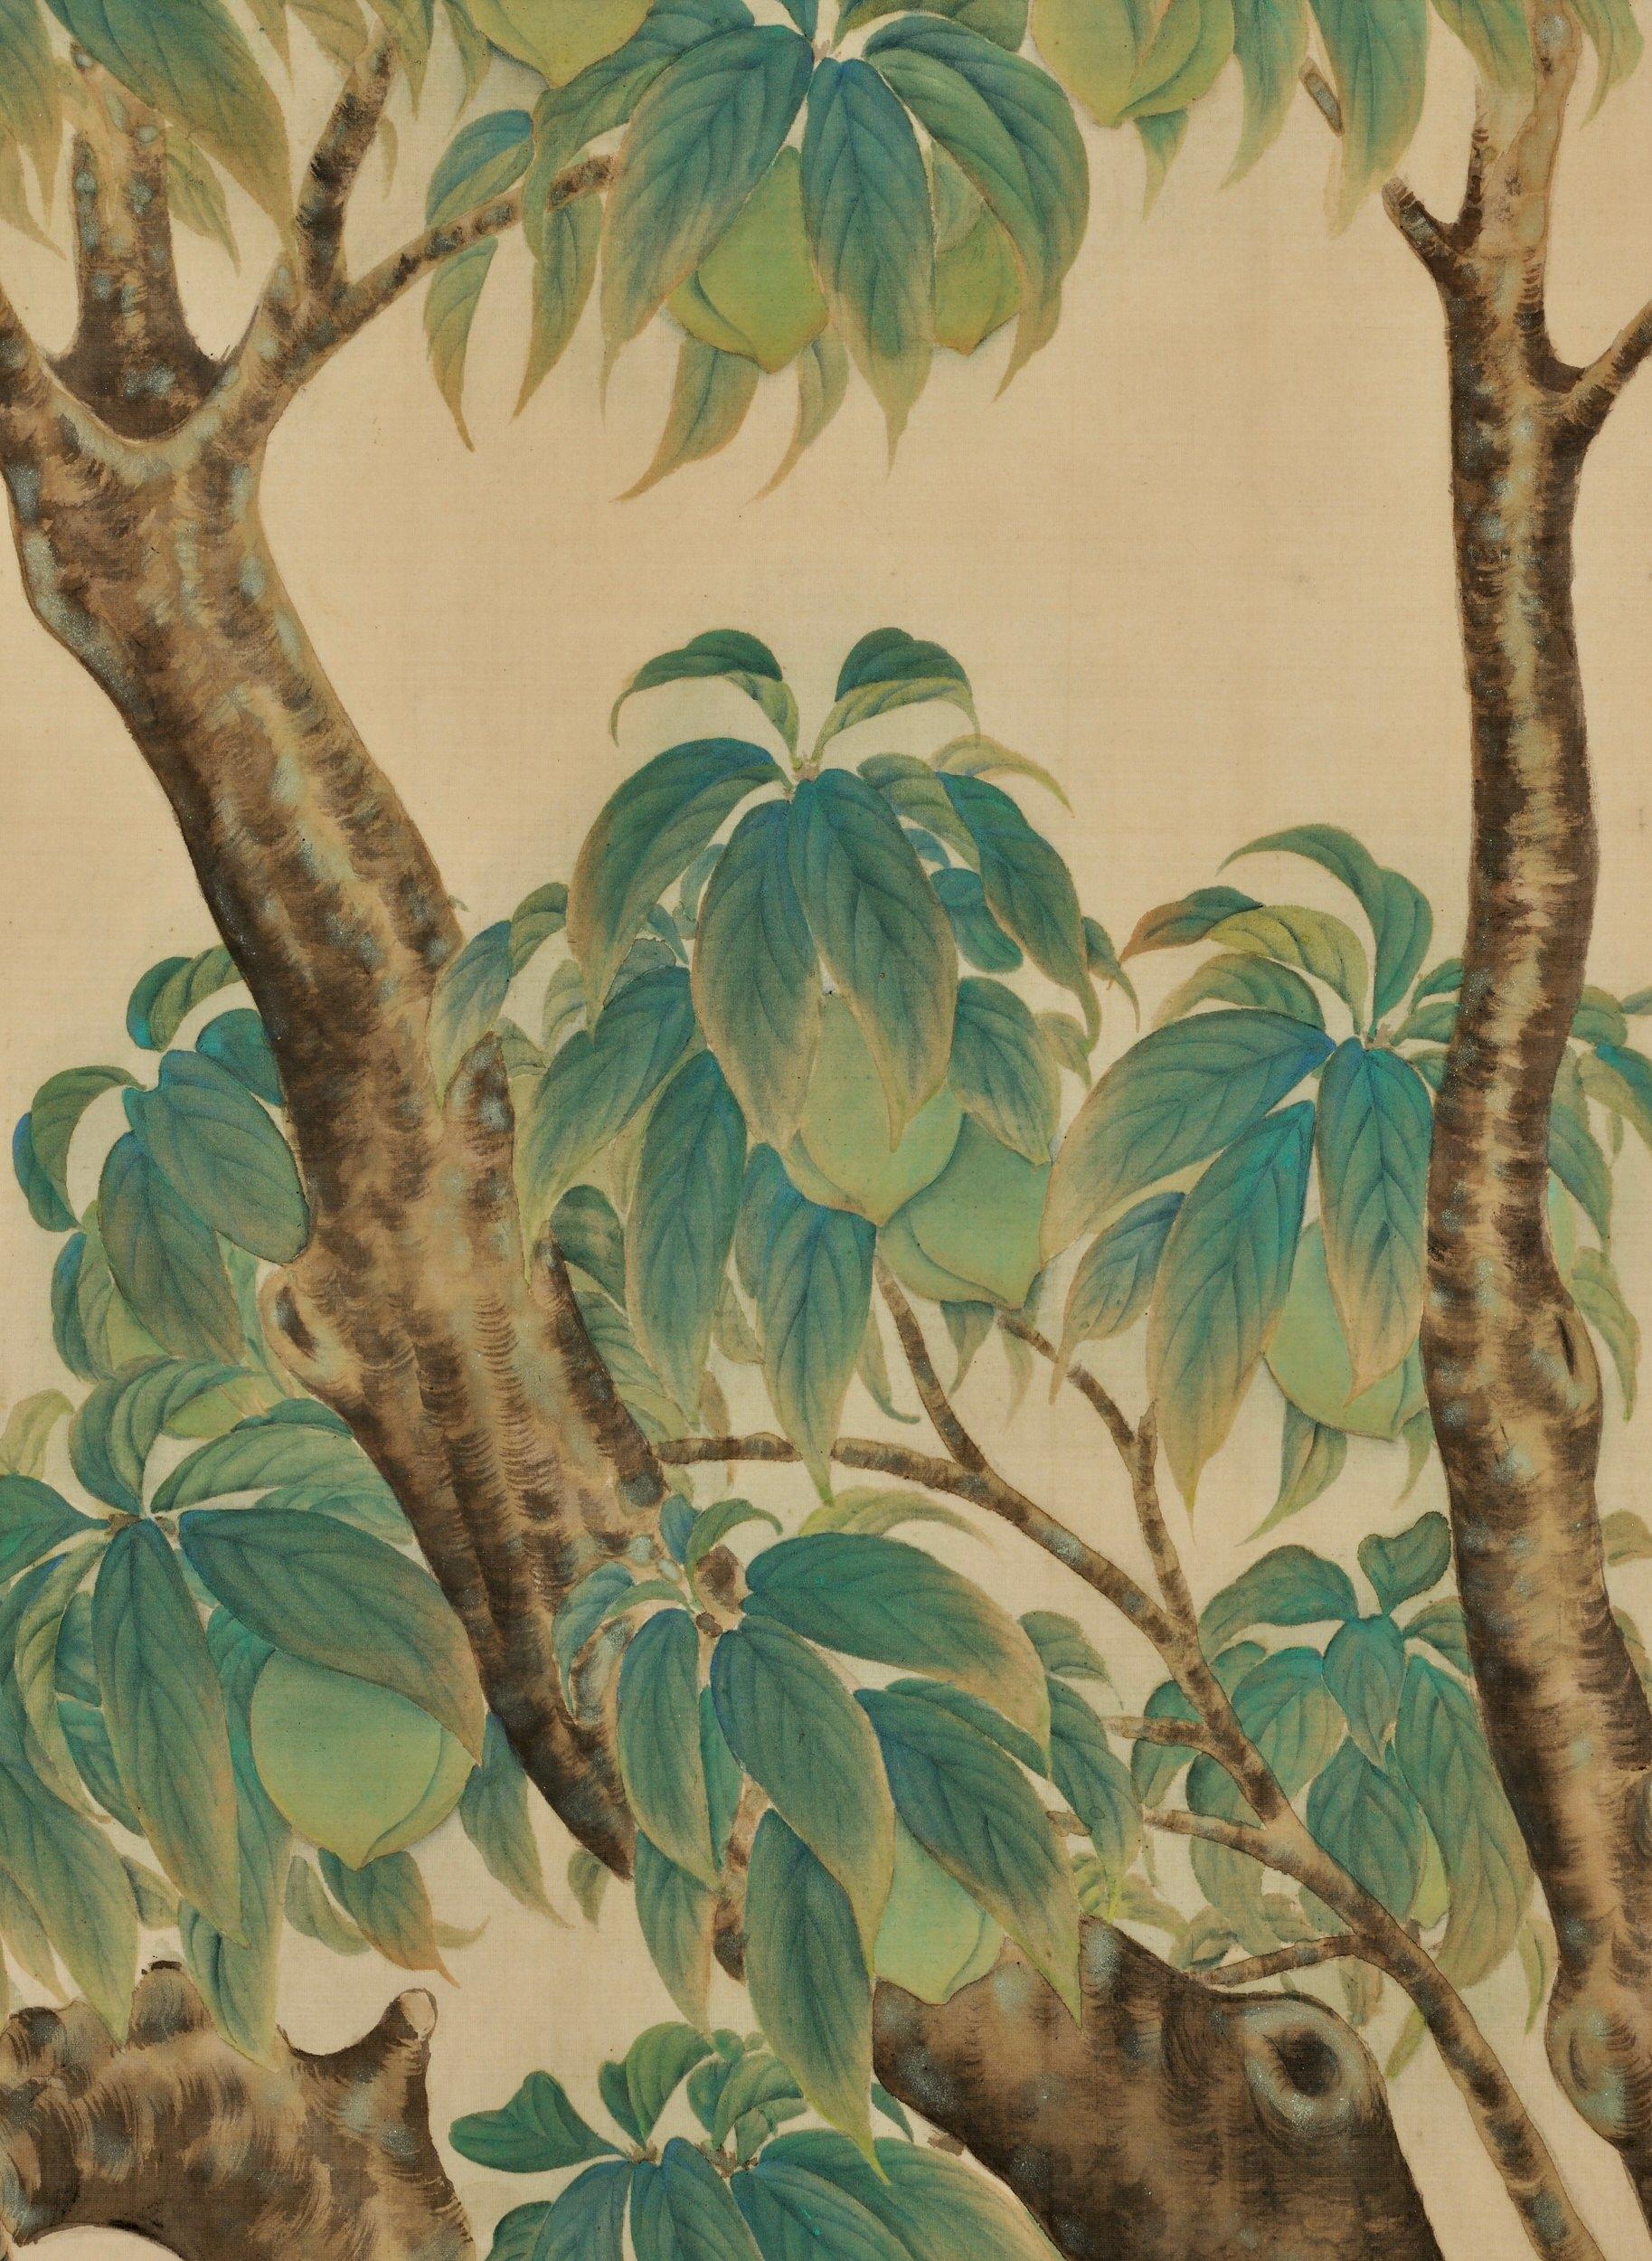 Nakamura Daizaburo

Tourterelles dans un pêcher

Période Taisho, vers 1920

Peinture encadrée. Pigments minéraux, encre et gofun sur soie

Signé : Daizaburo

Dimensions (encadré) :

W. 95,5 cm x H. 89 cm x D. 2,5 cm

Il s'agit d'un